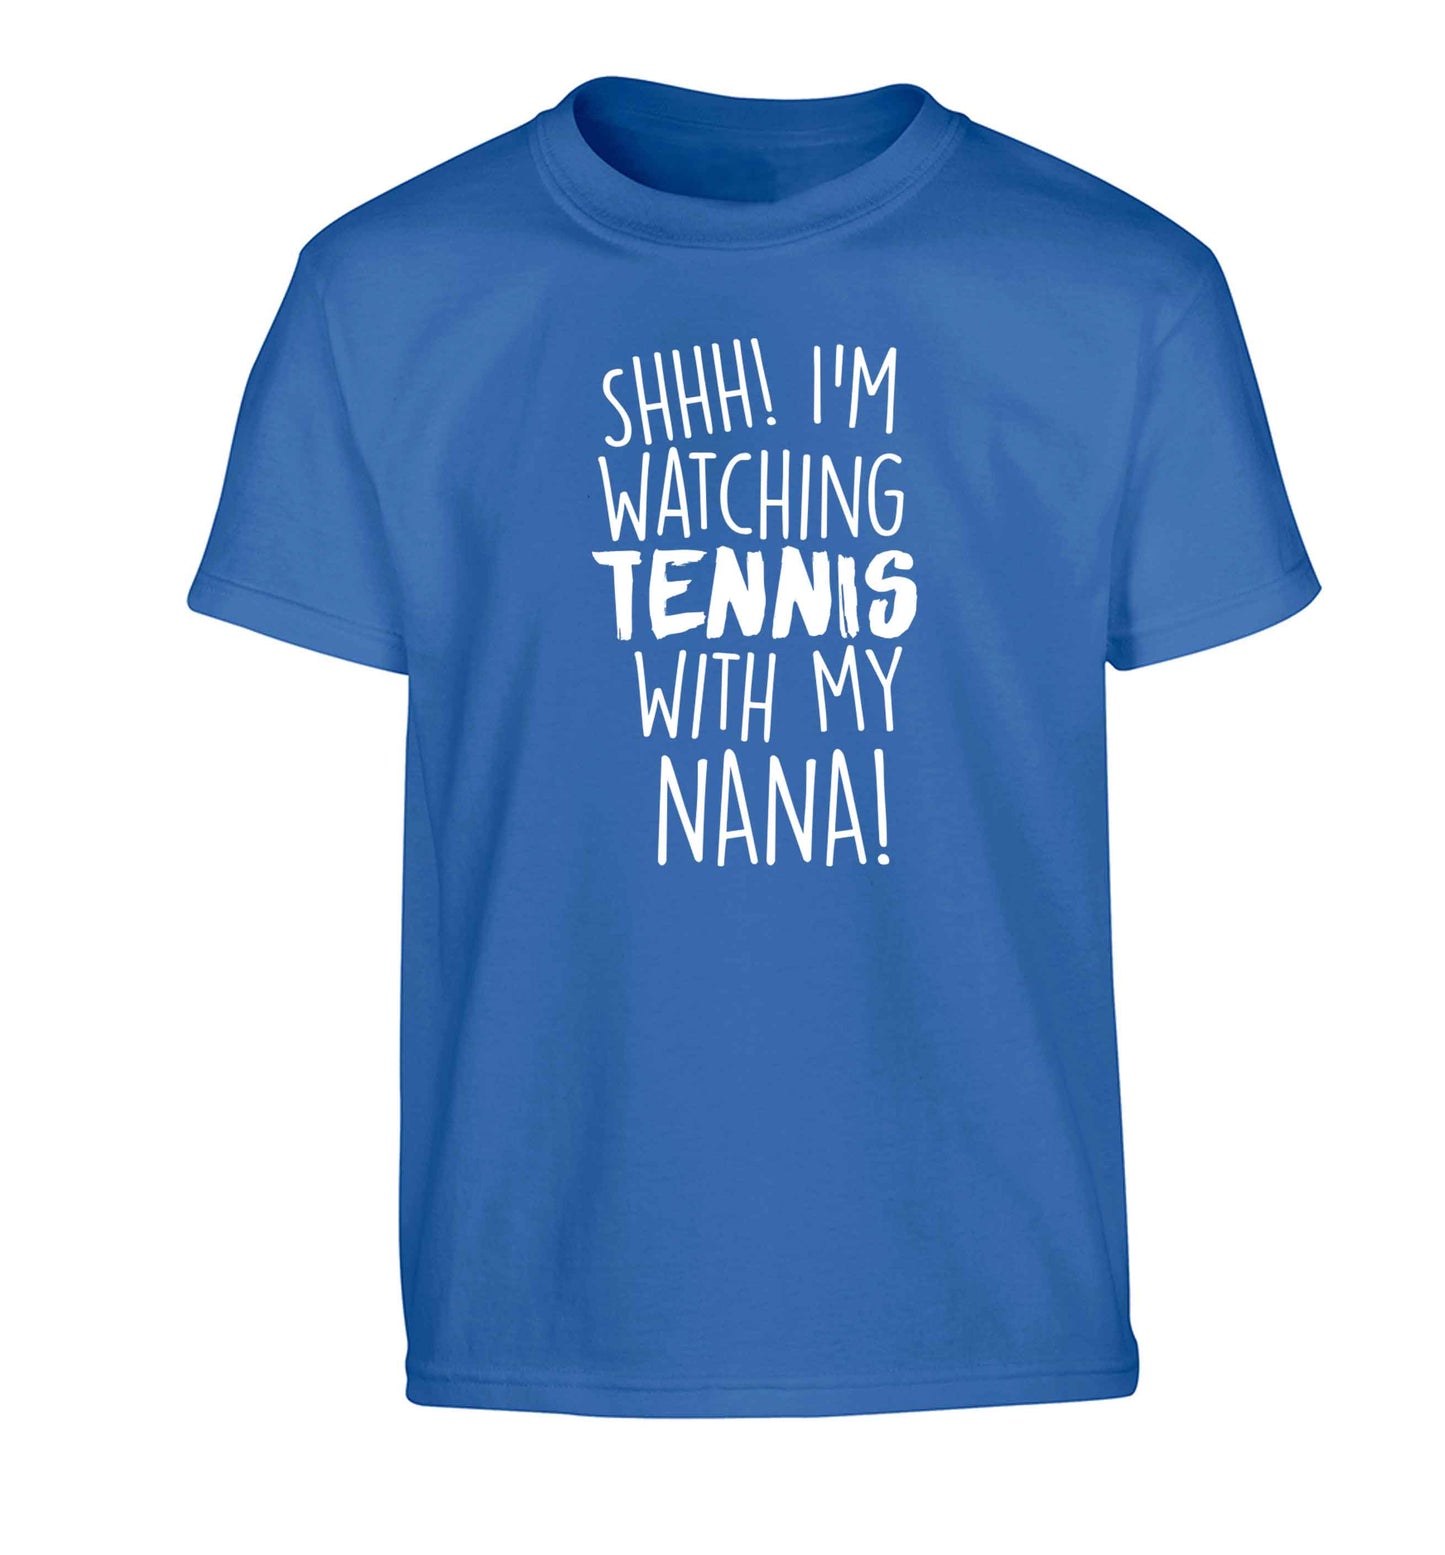 Shh! I'm watching tennis with my nana! Children's blue Tshirt 12-13 Years